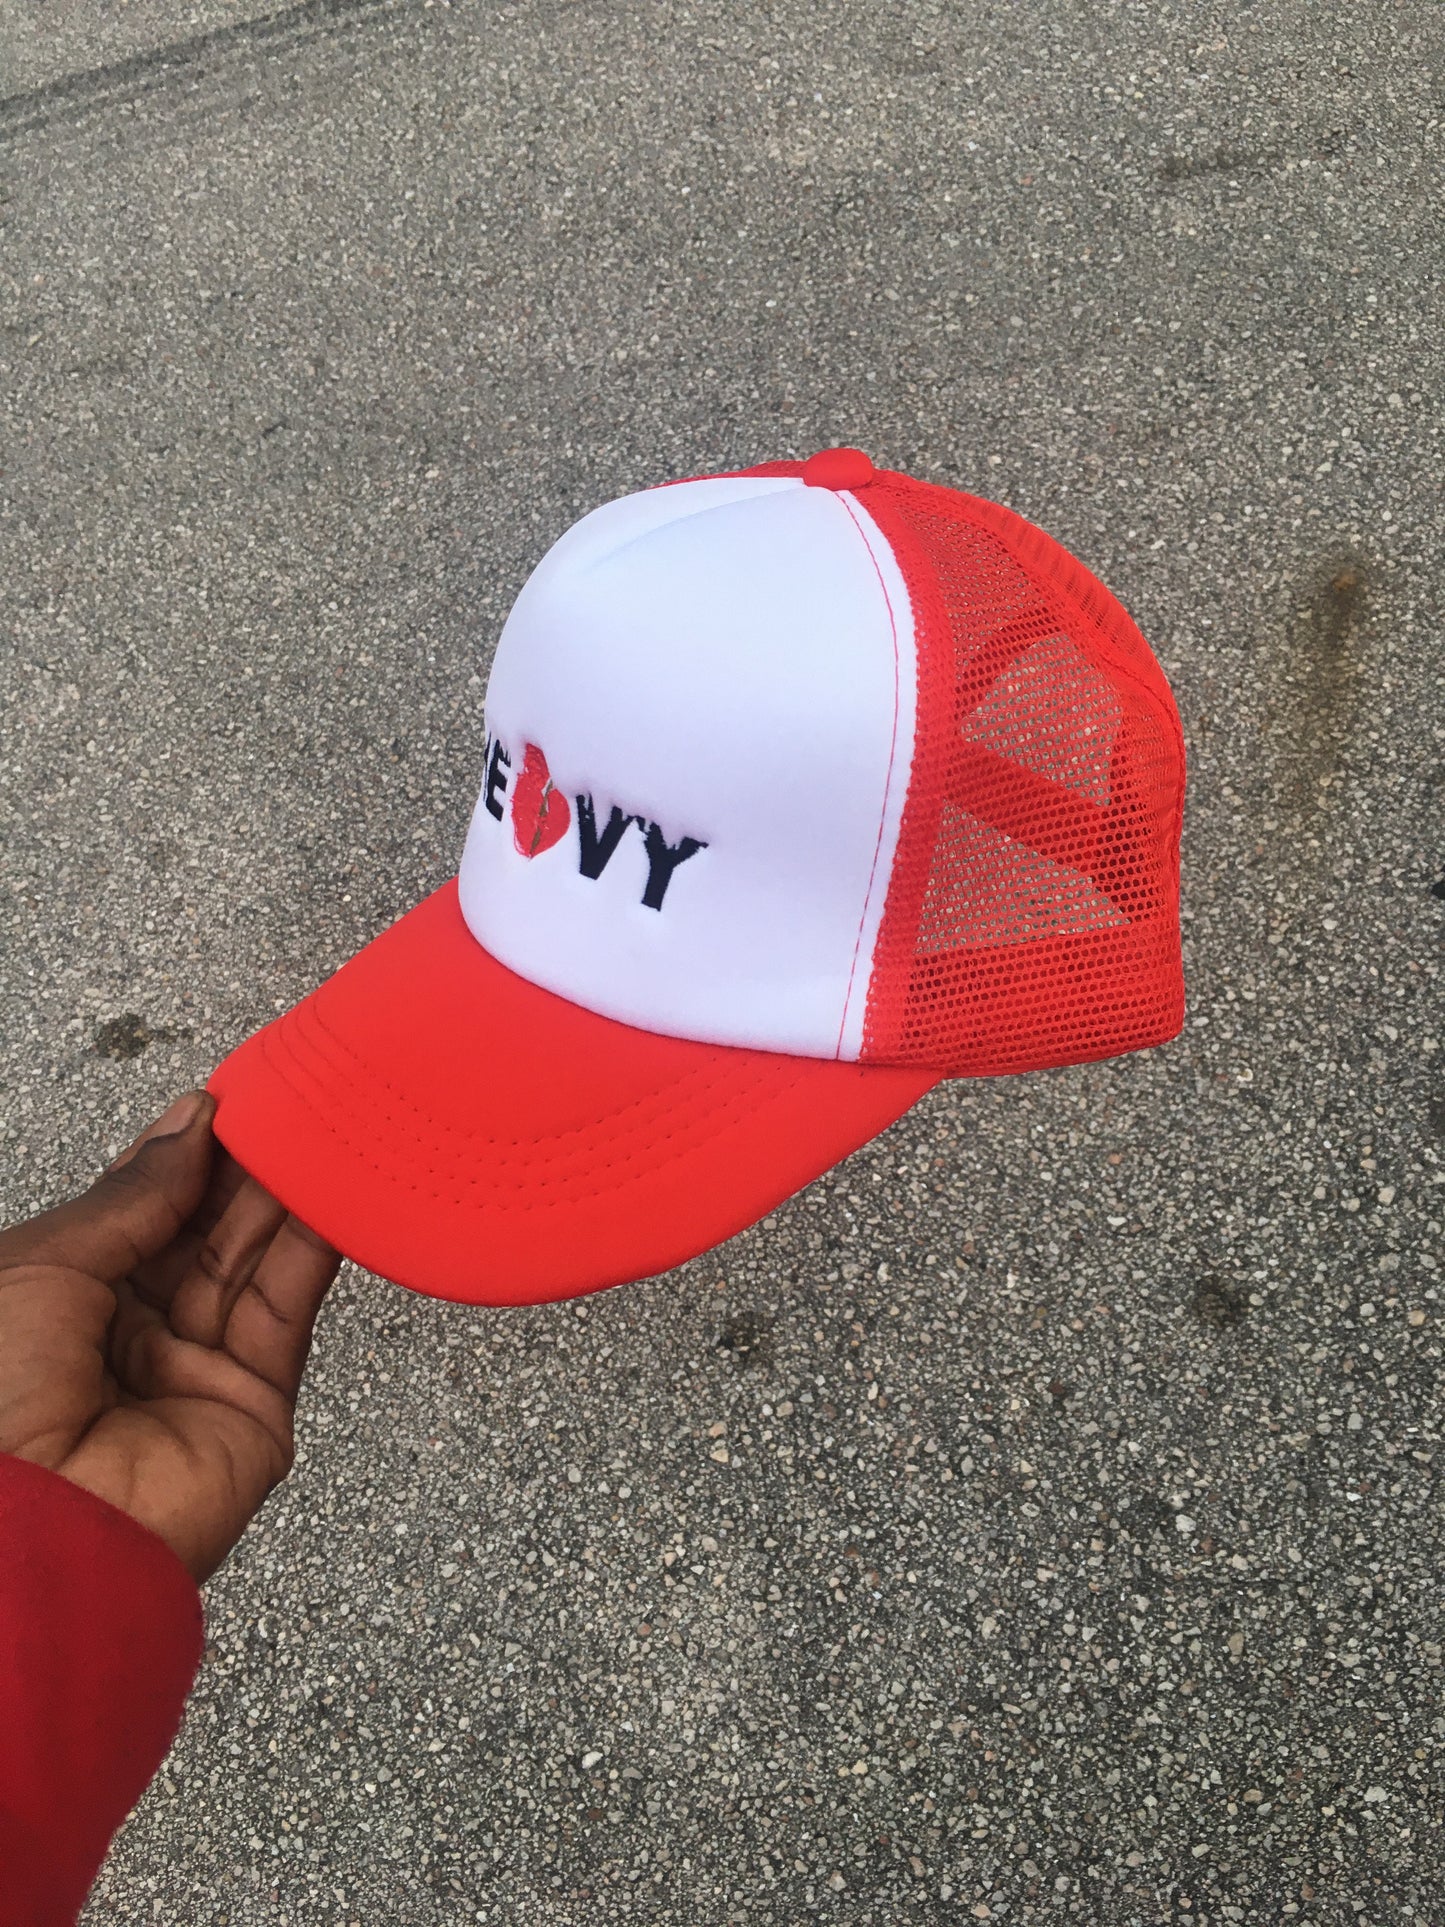 (Heavy) “Trucker Hat”